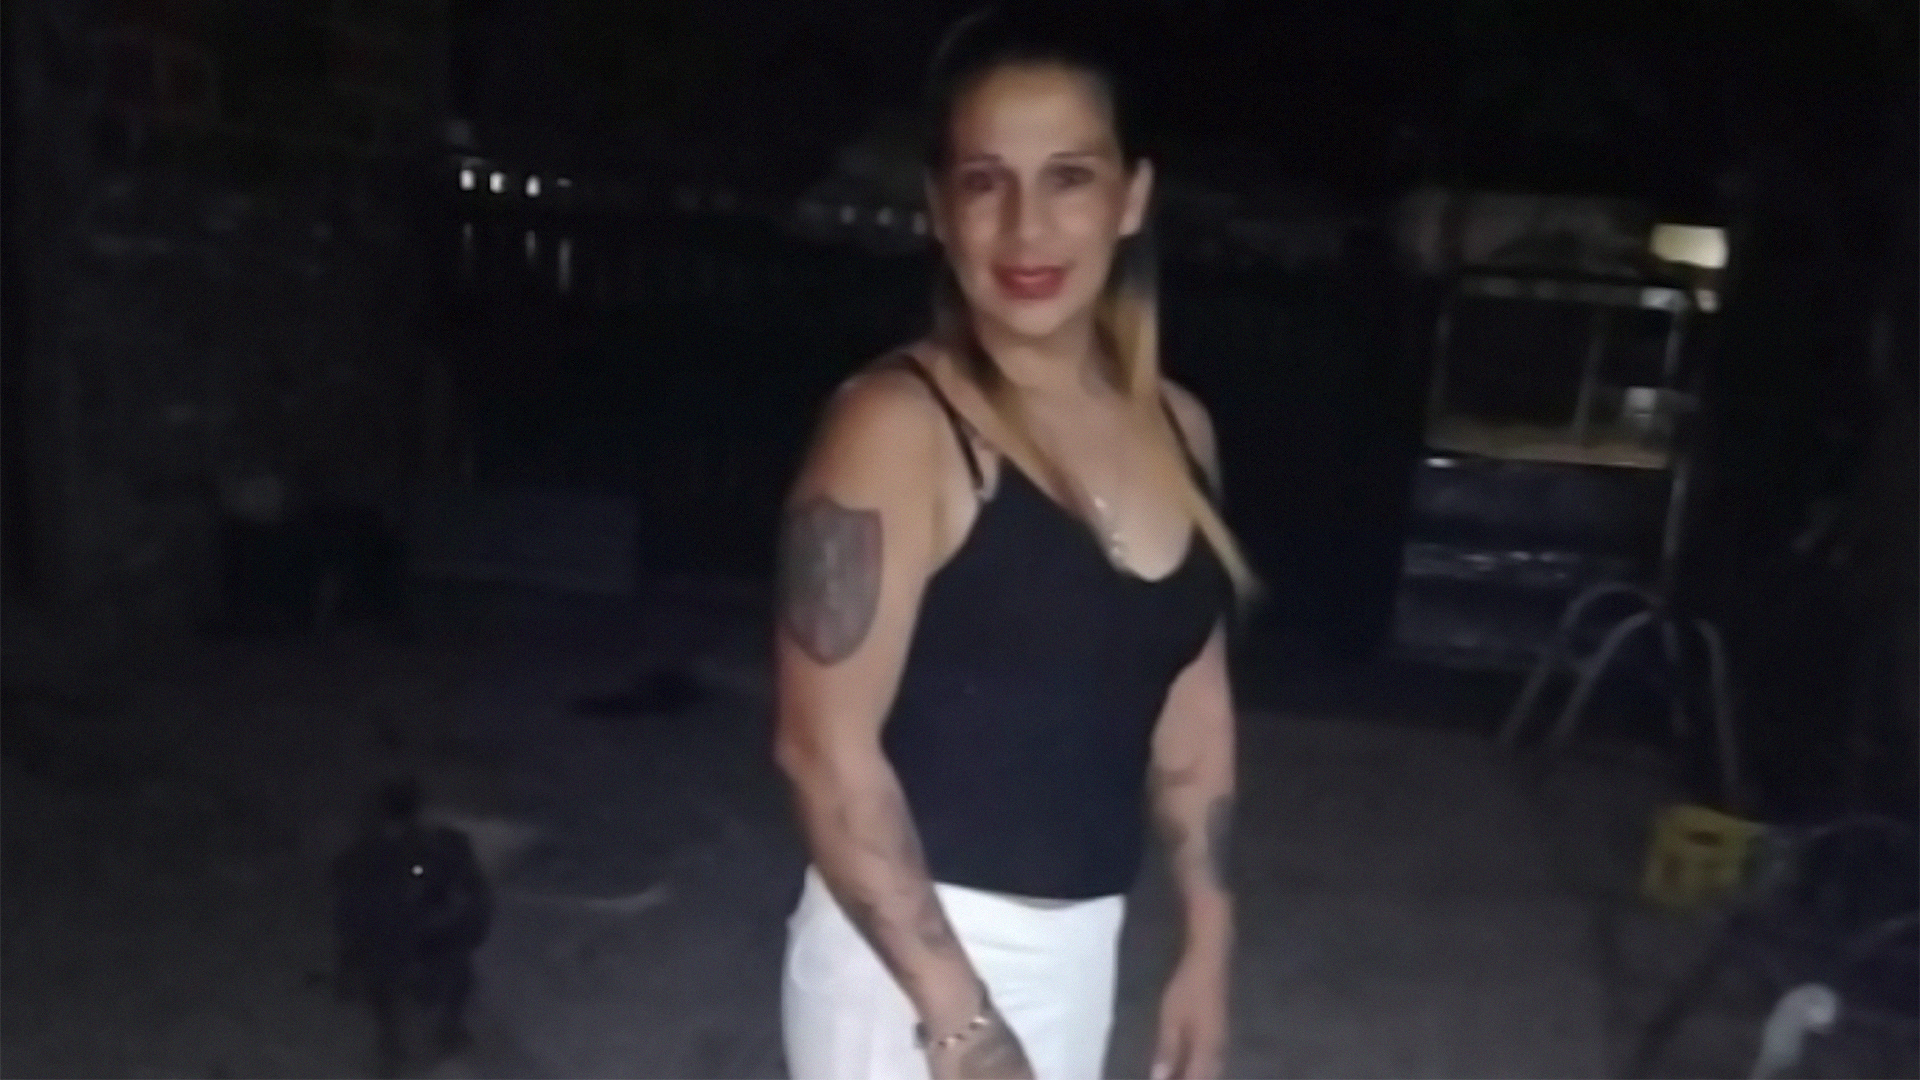 Verónica Ibarrola, la víctima, tenía 39 años